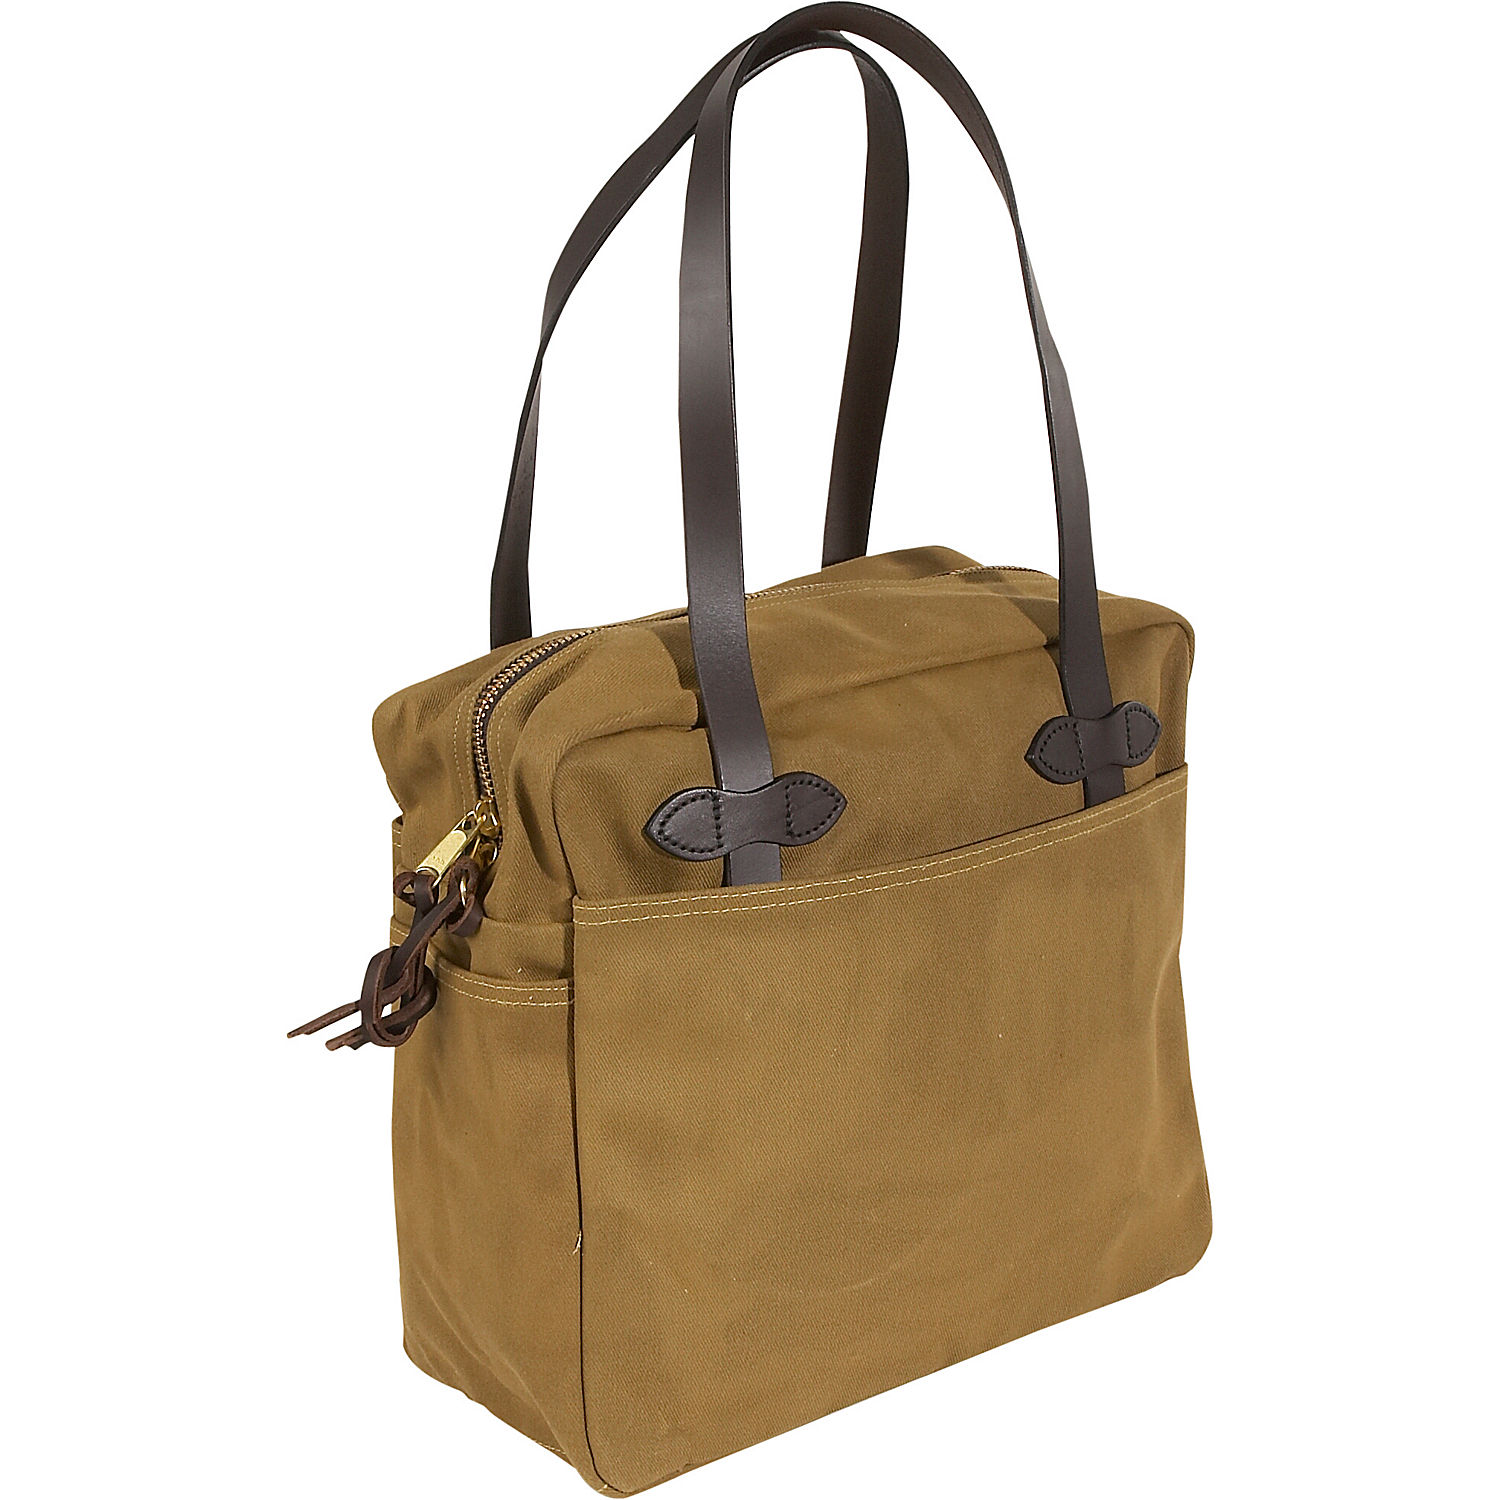 Tote Bag: Large Tote Bag Zipper